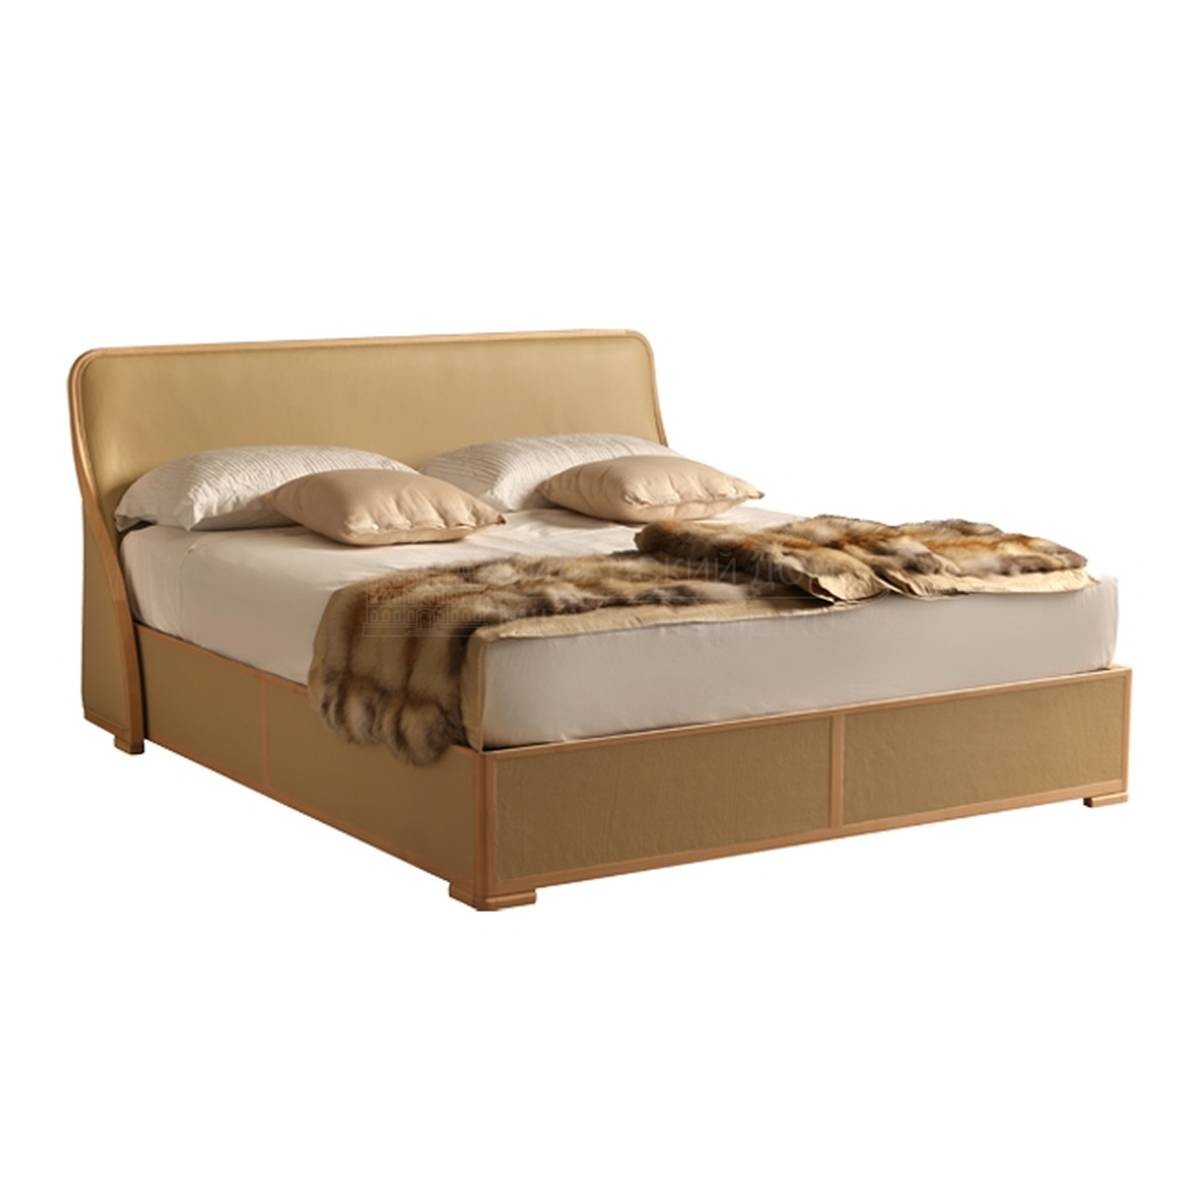 Кровать с мягким изголовьем Orlando / Art.2801 из Италии фабрики MORELATO